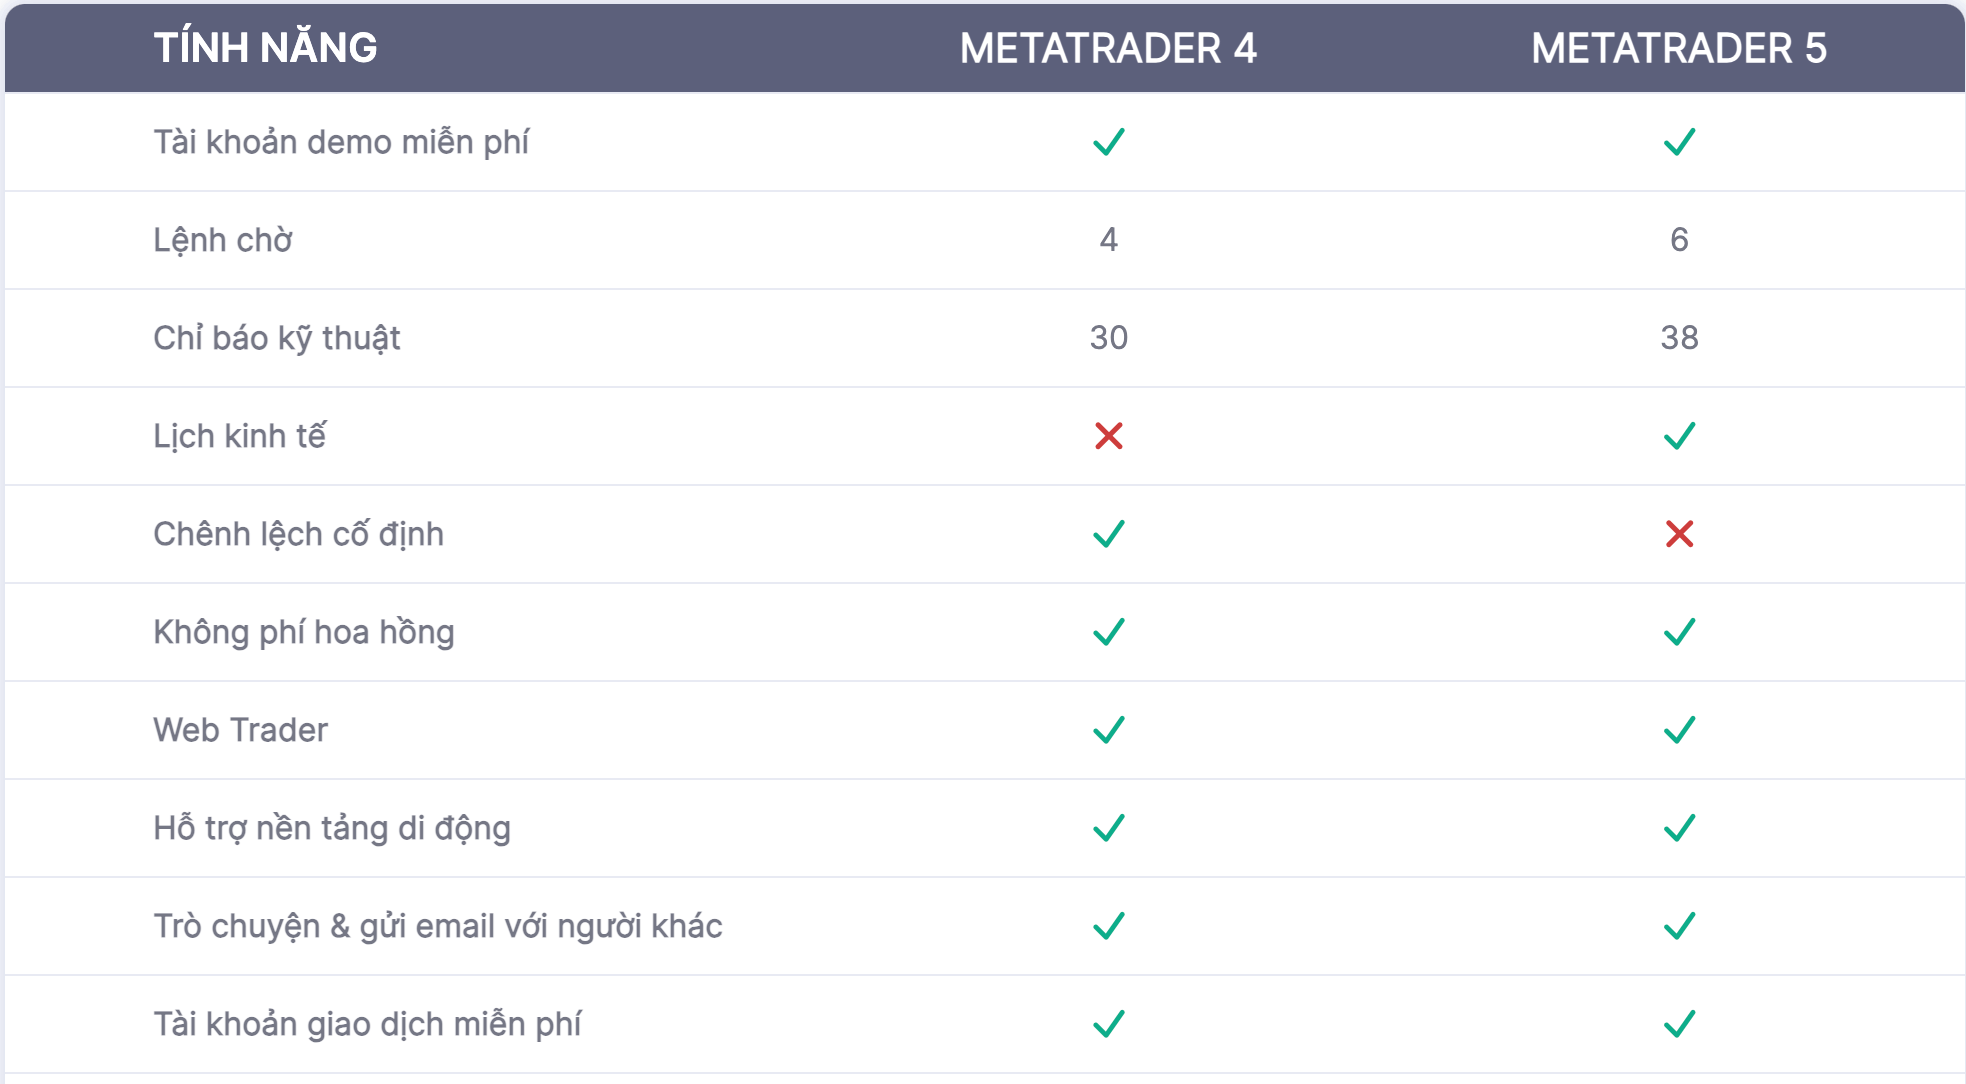 MT4 và MT5 là nền tảng giao dịch phổ biến của sàn GKFX